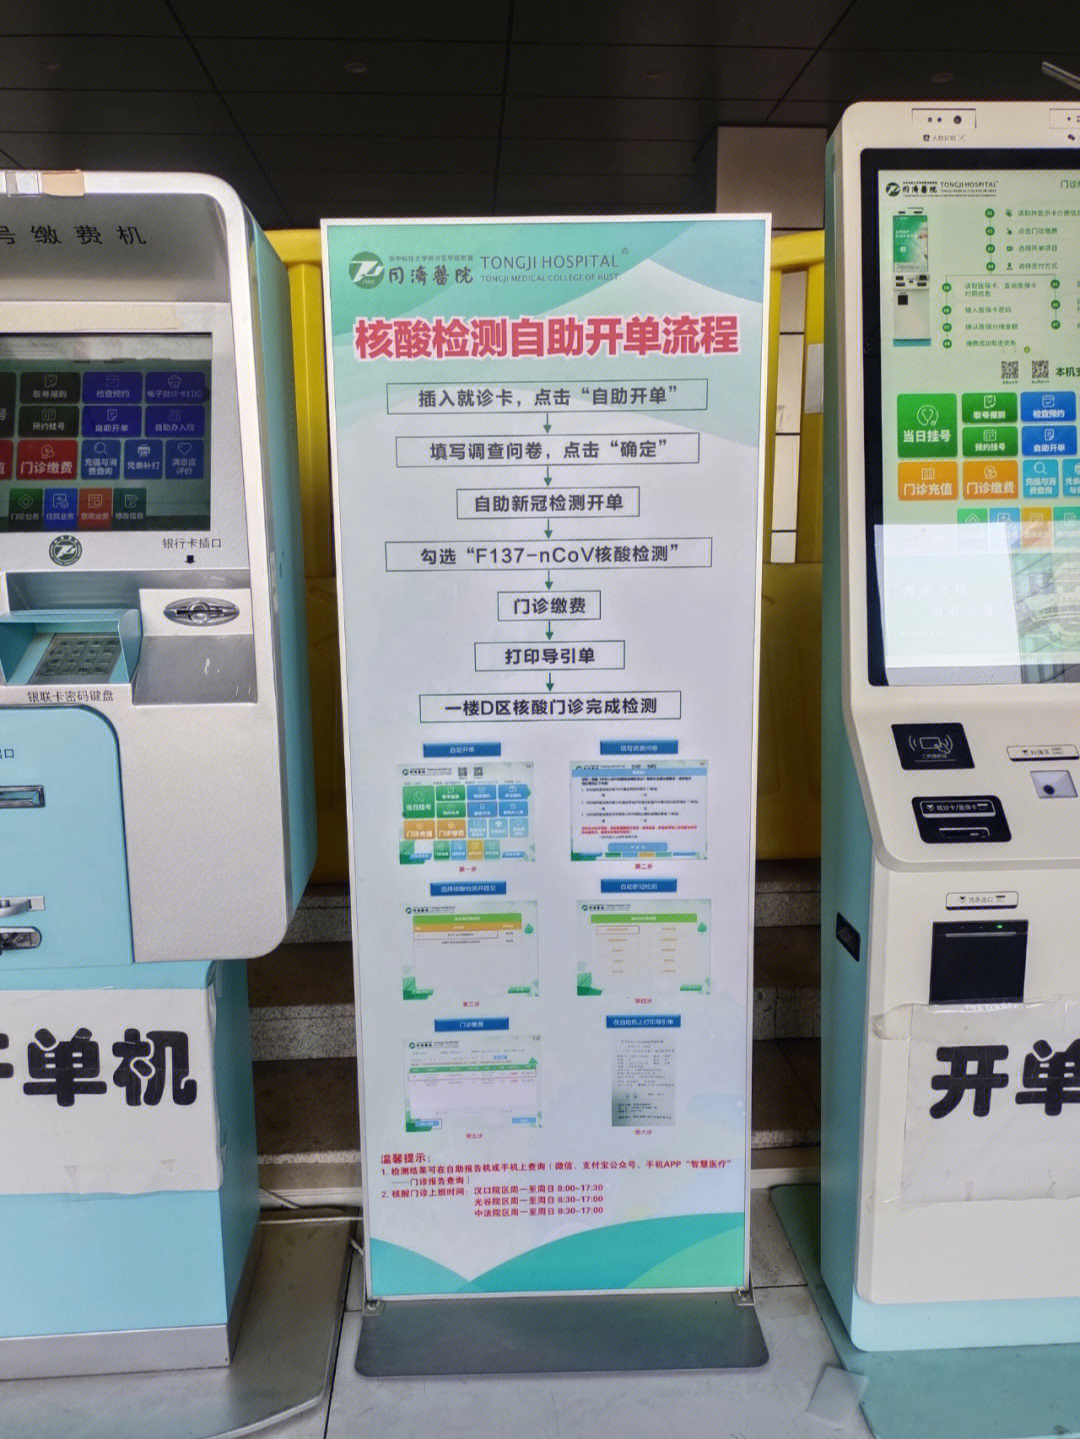 武汉同济医院光谷院区自费核酸检测流程